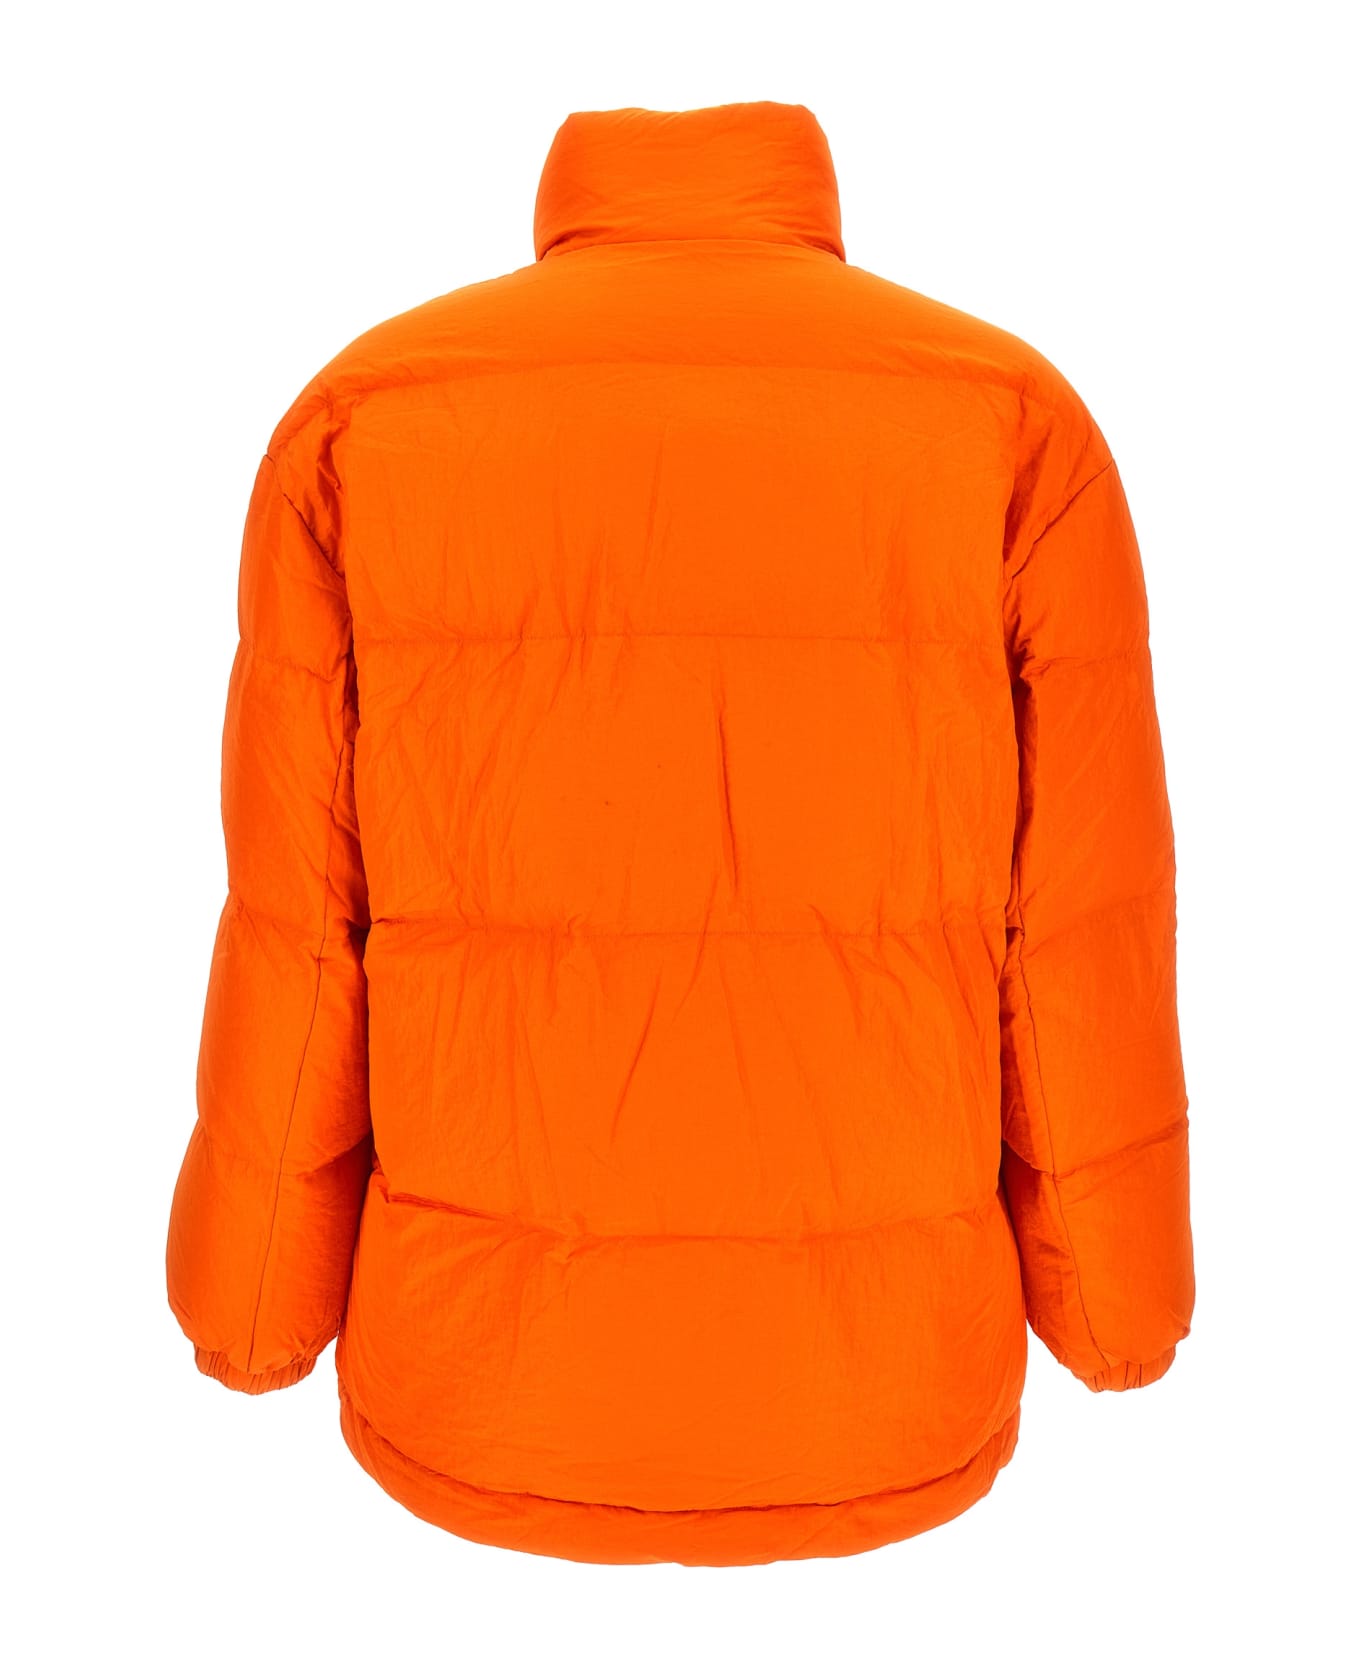 Isabel Marant Dynamo Padded Jacket - Orange